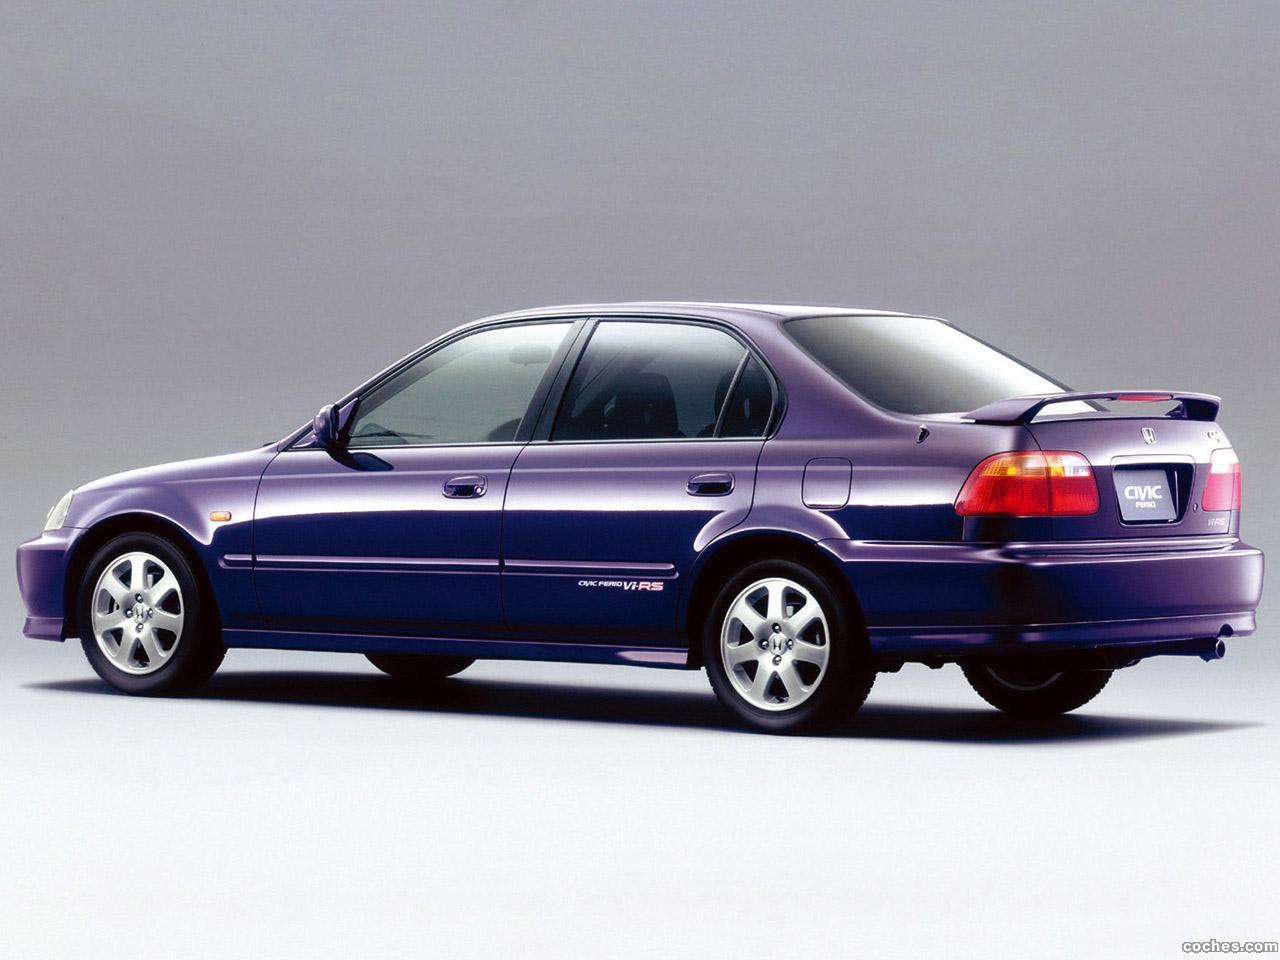 Fotos de Honda Civic Ferio VI RS 1998